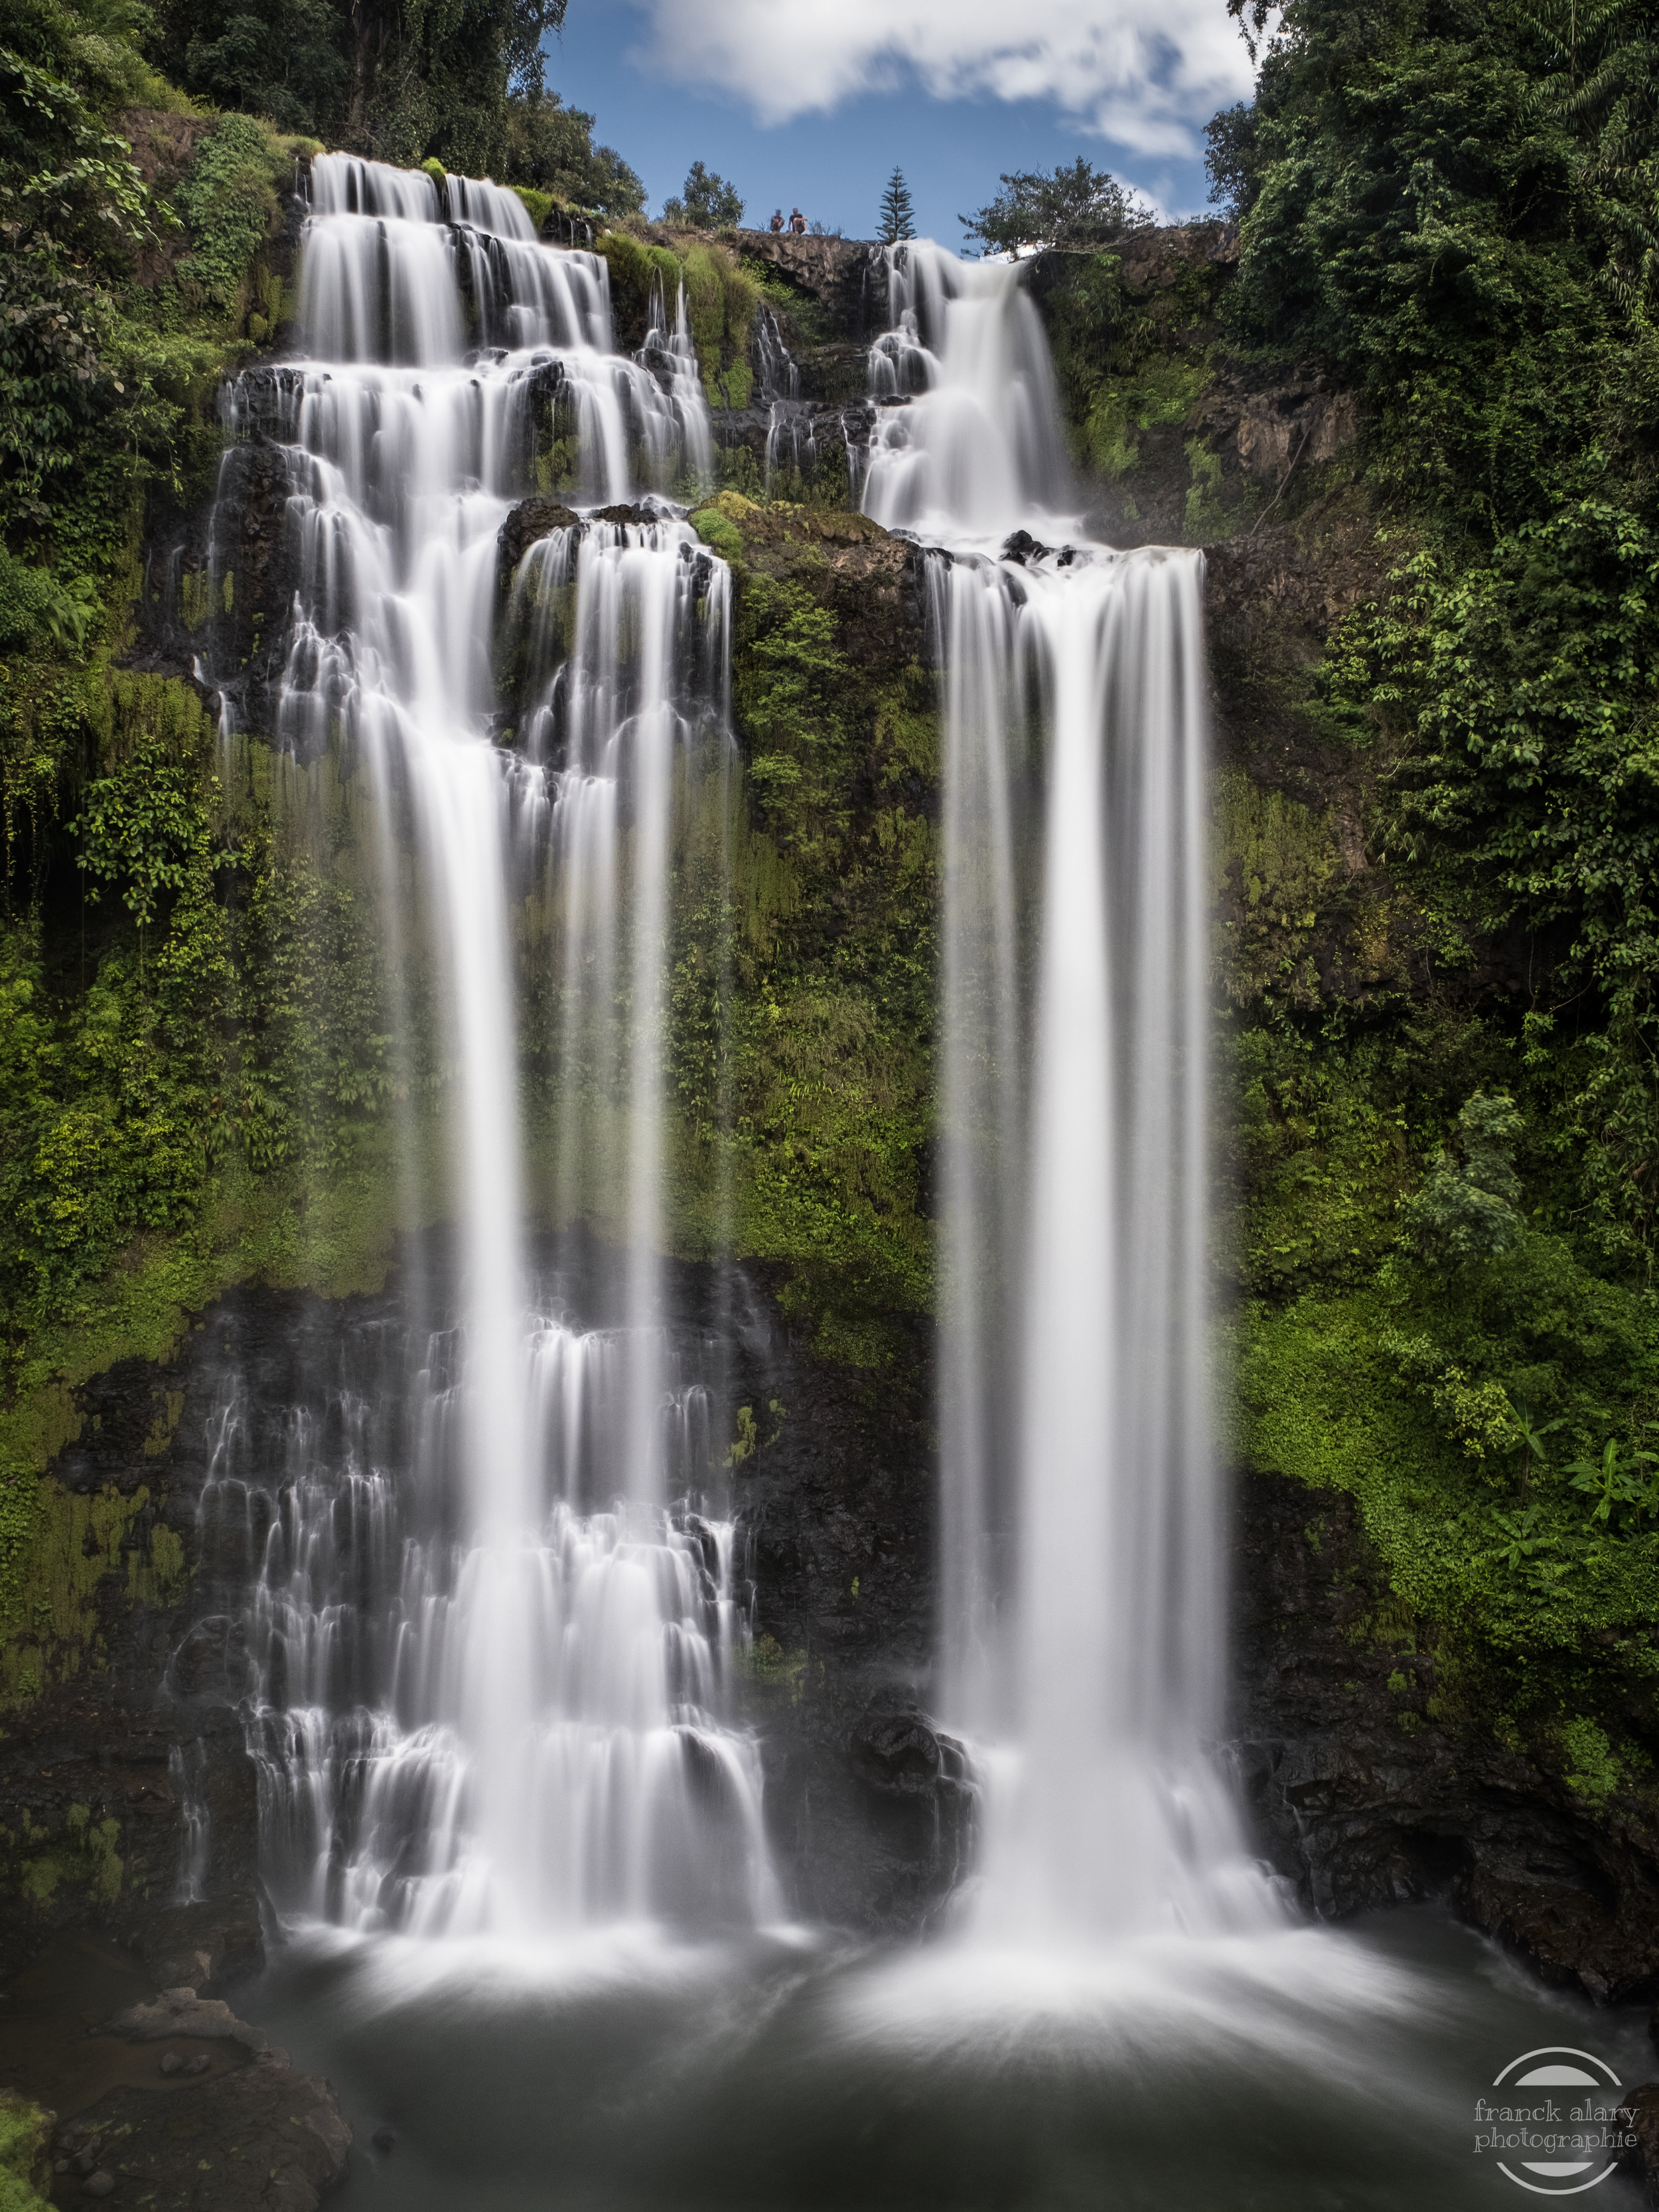   Cascades jumelles de Tad Yuang    Situées sur le plateau des Bolovens la cascade de Tad Yuang est impressionnante avec ses deux chutes jumelles qui tombent de plus de 40 mètres dans la jungle luxuriante. Elle est accessible grâce au travail de volo